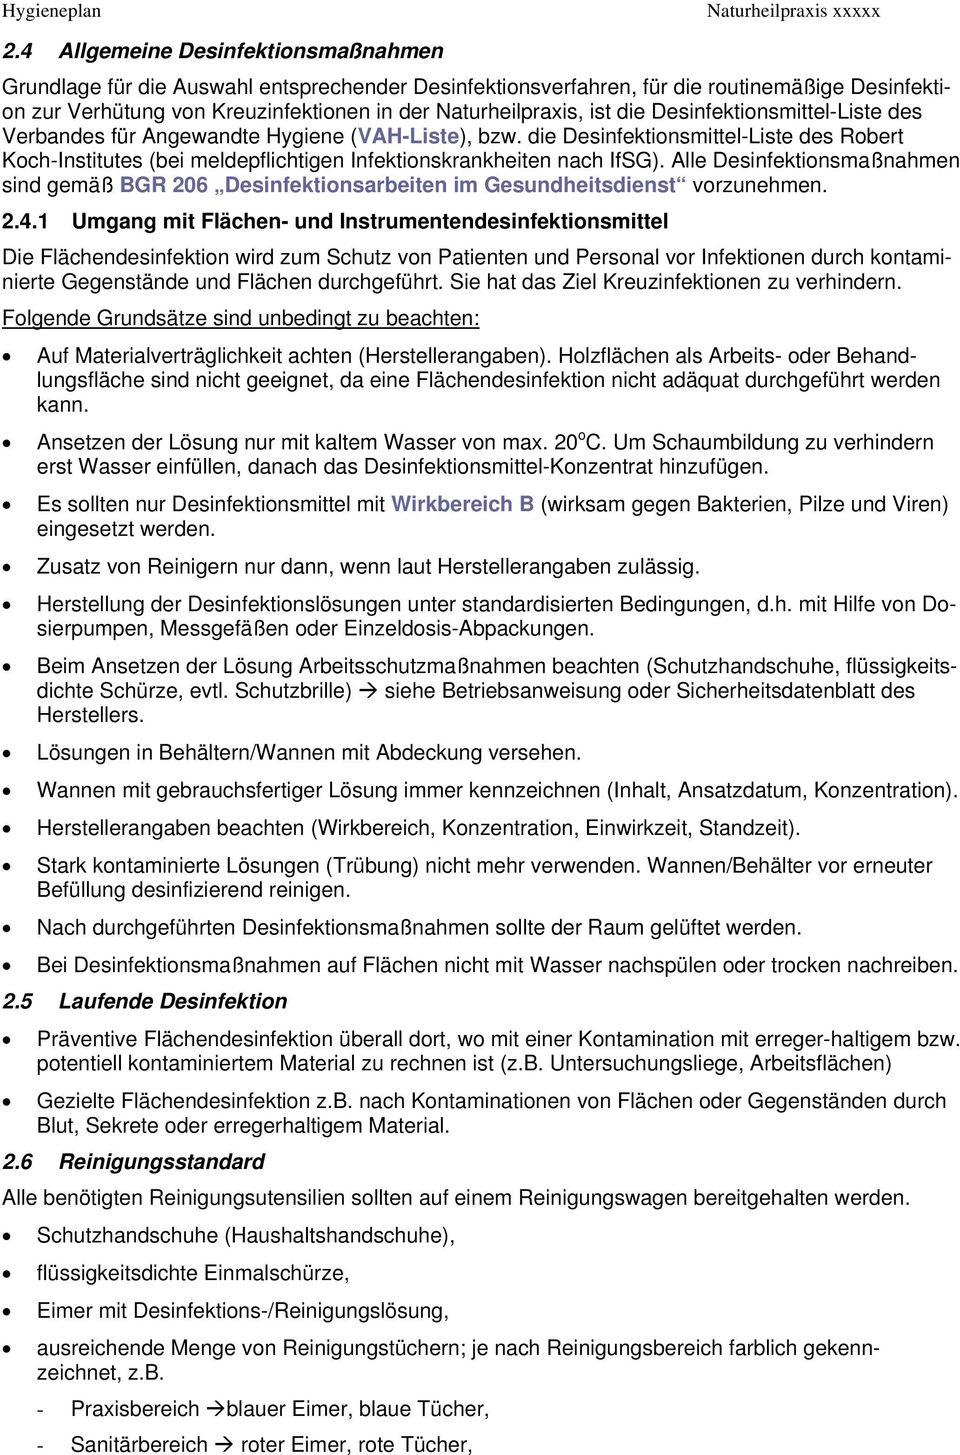 die Desinfektionsmittel-Liste des Robert Koch-Institutes (bei meldepflichtigen Infektionskrankheiten nach IfSG).